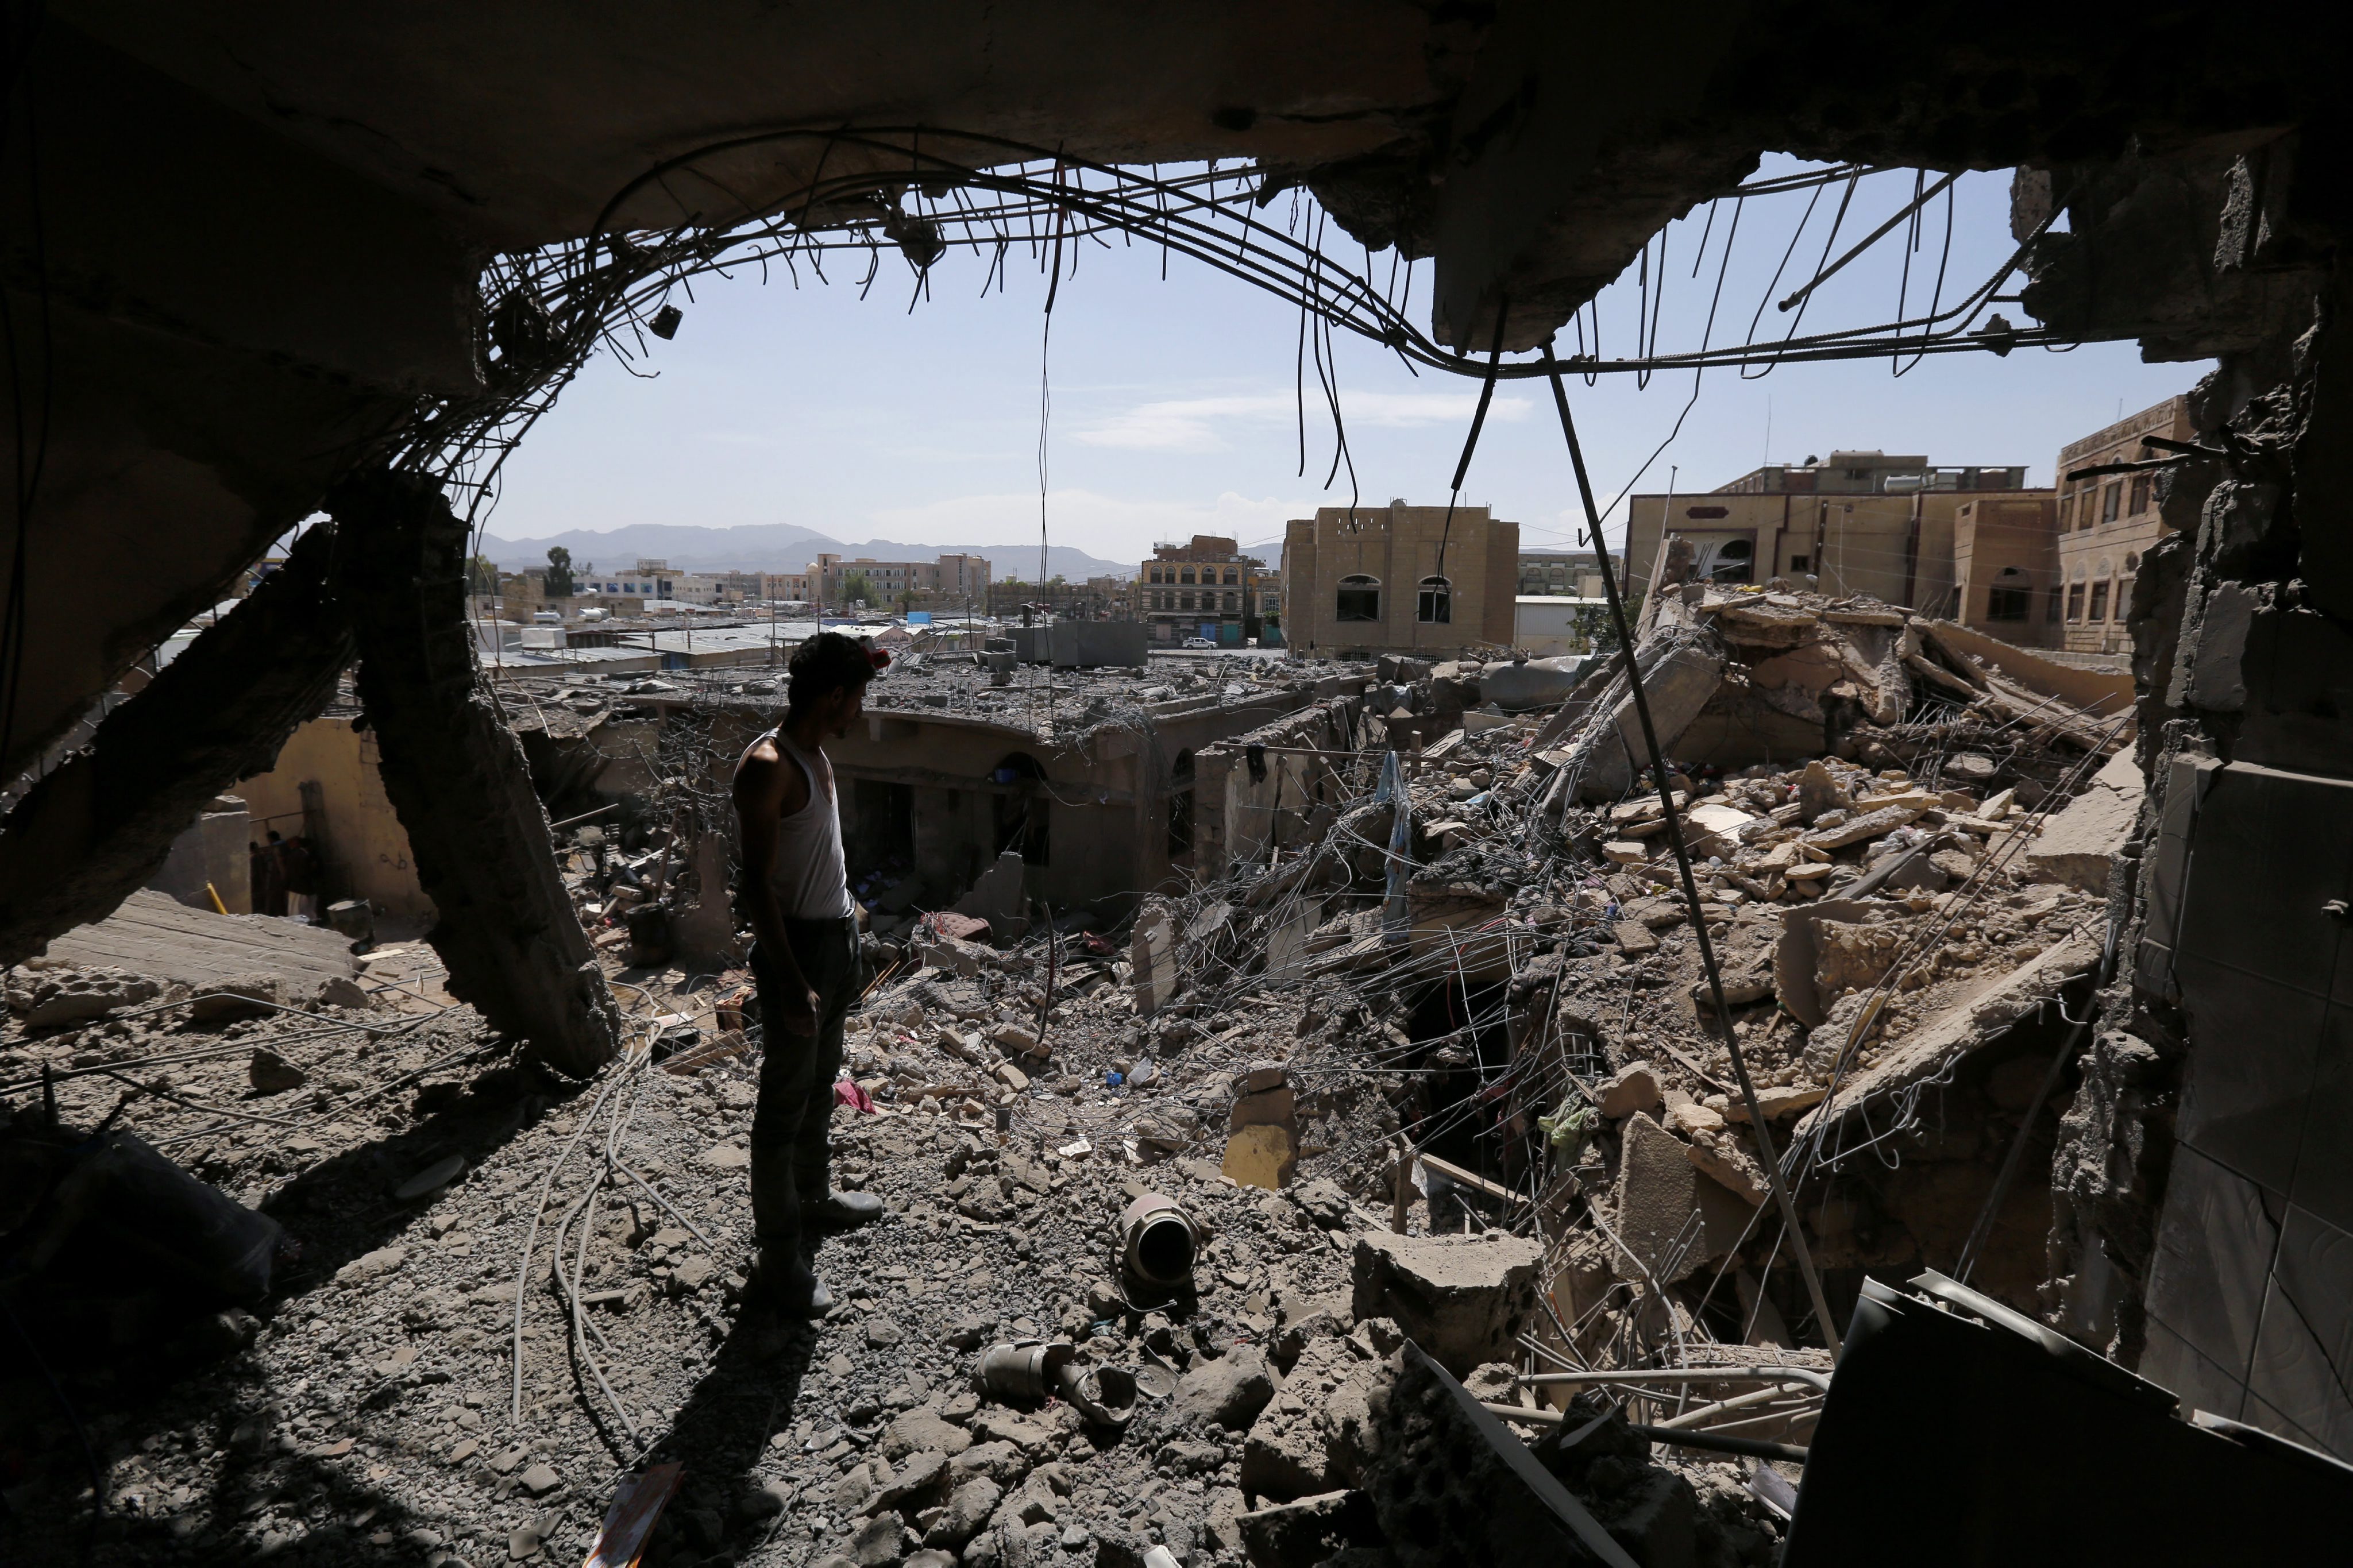 چرا و چگونه ایالات متحده به تدریج وارد جنگ مستقیم در یمن شده است؟